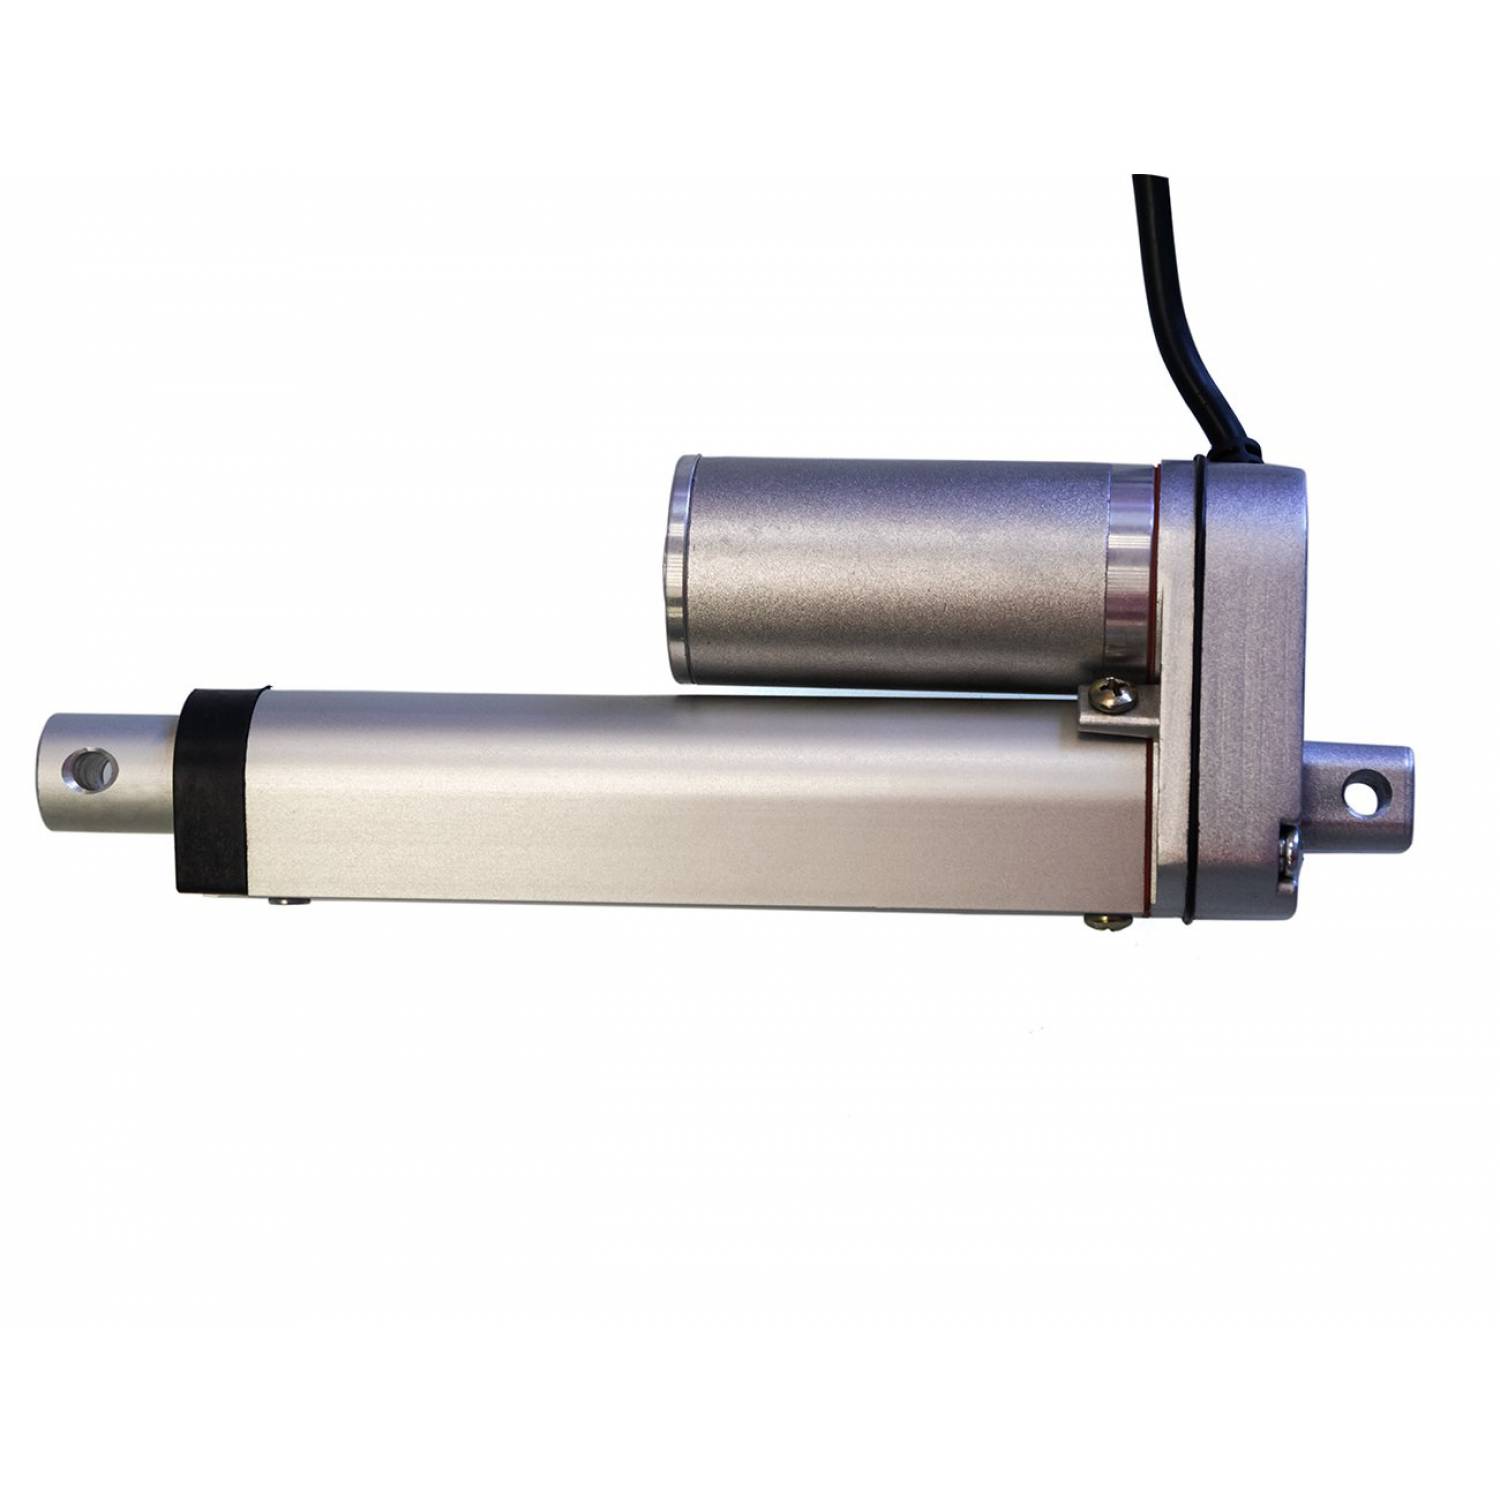 Актуатор (линейный привод) длина 800 мм, питание 12 вольт , нагрузка до 130 кг, скорость 7 мм/сек